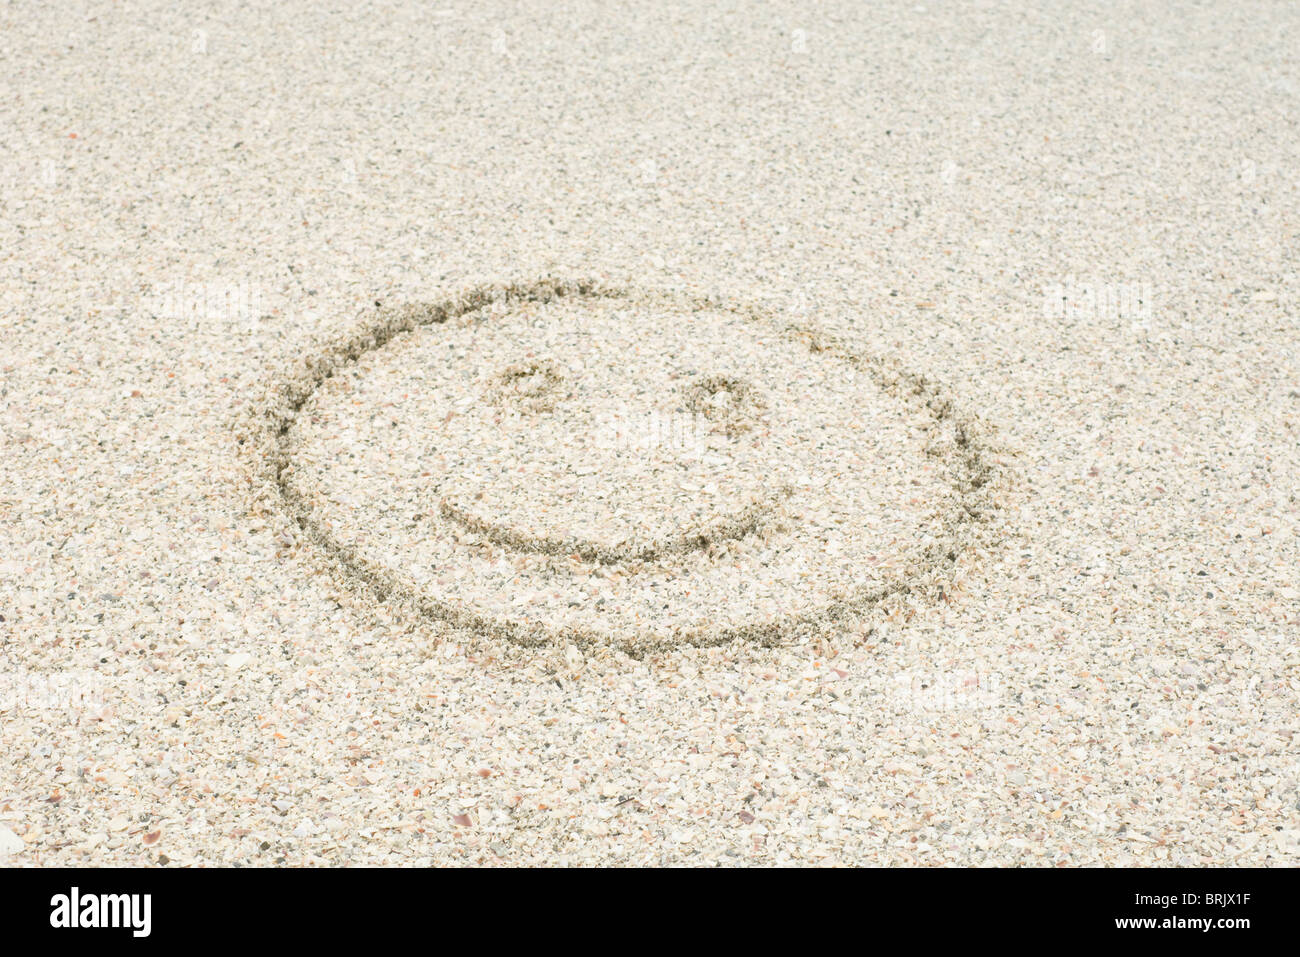 Smiley-Gesicht gezeichnet im Sand am Strand Stockfoto